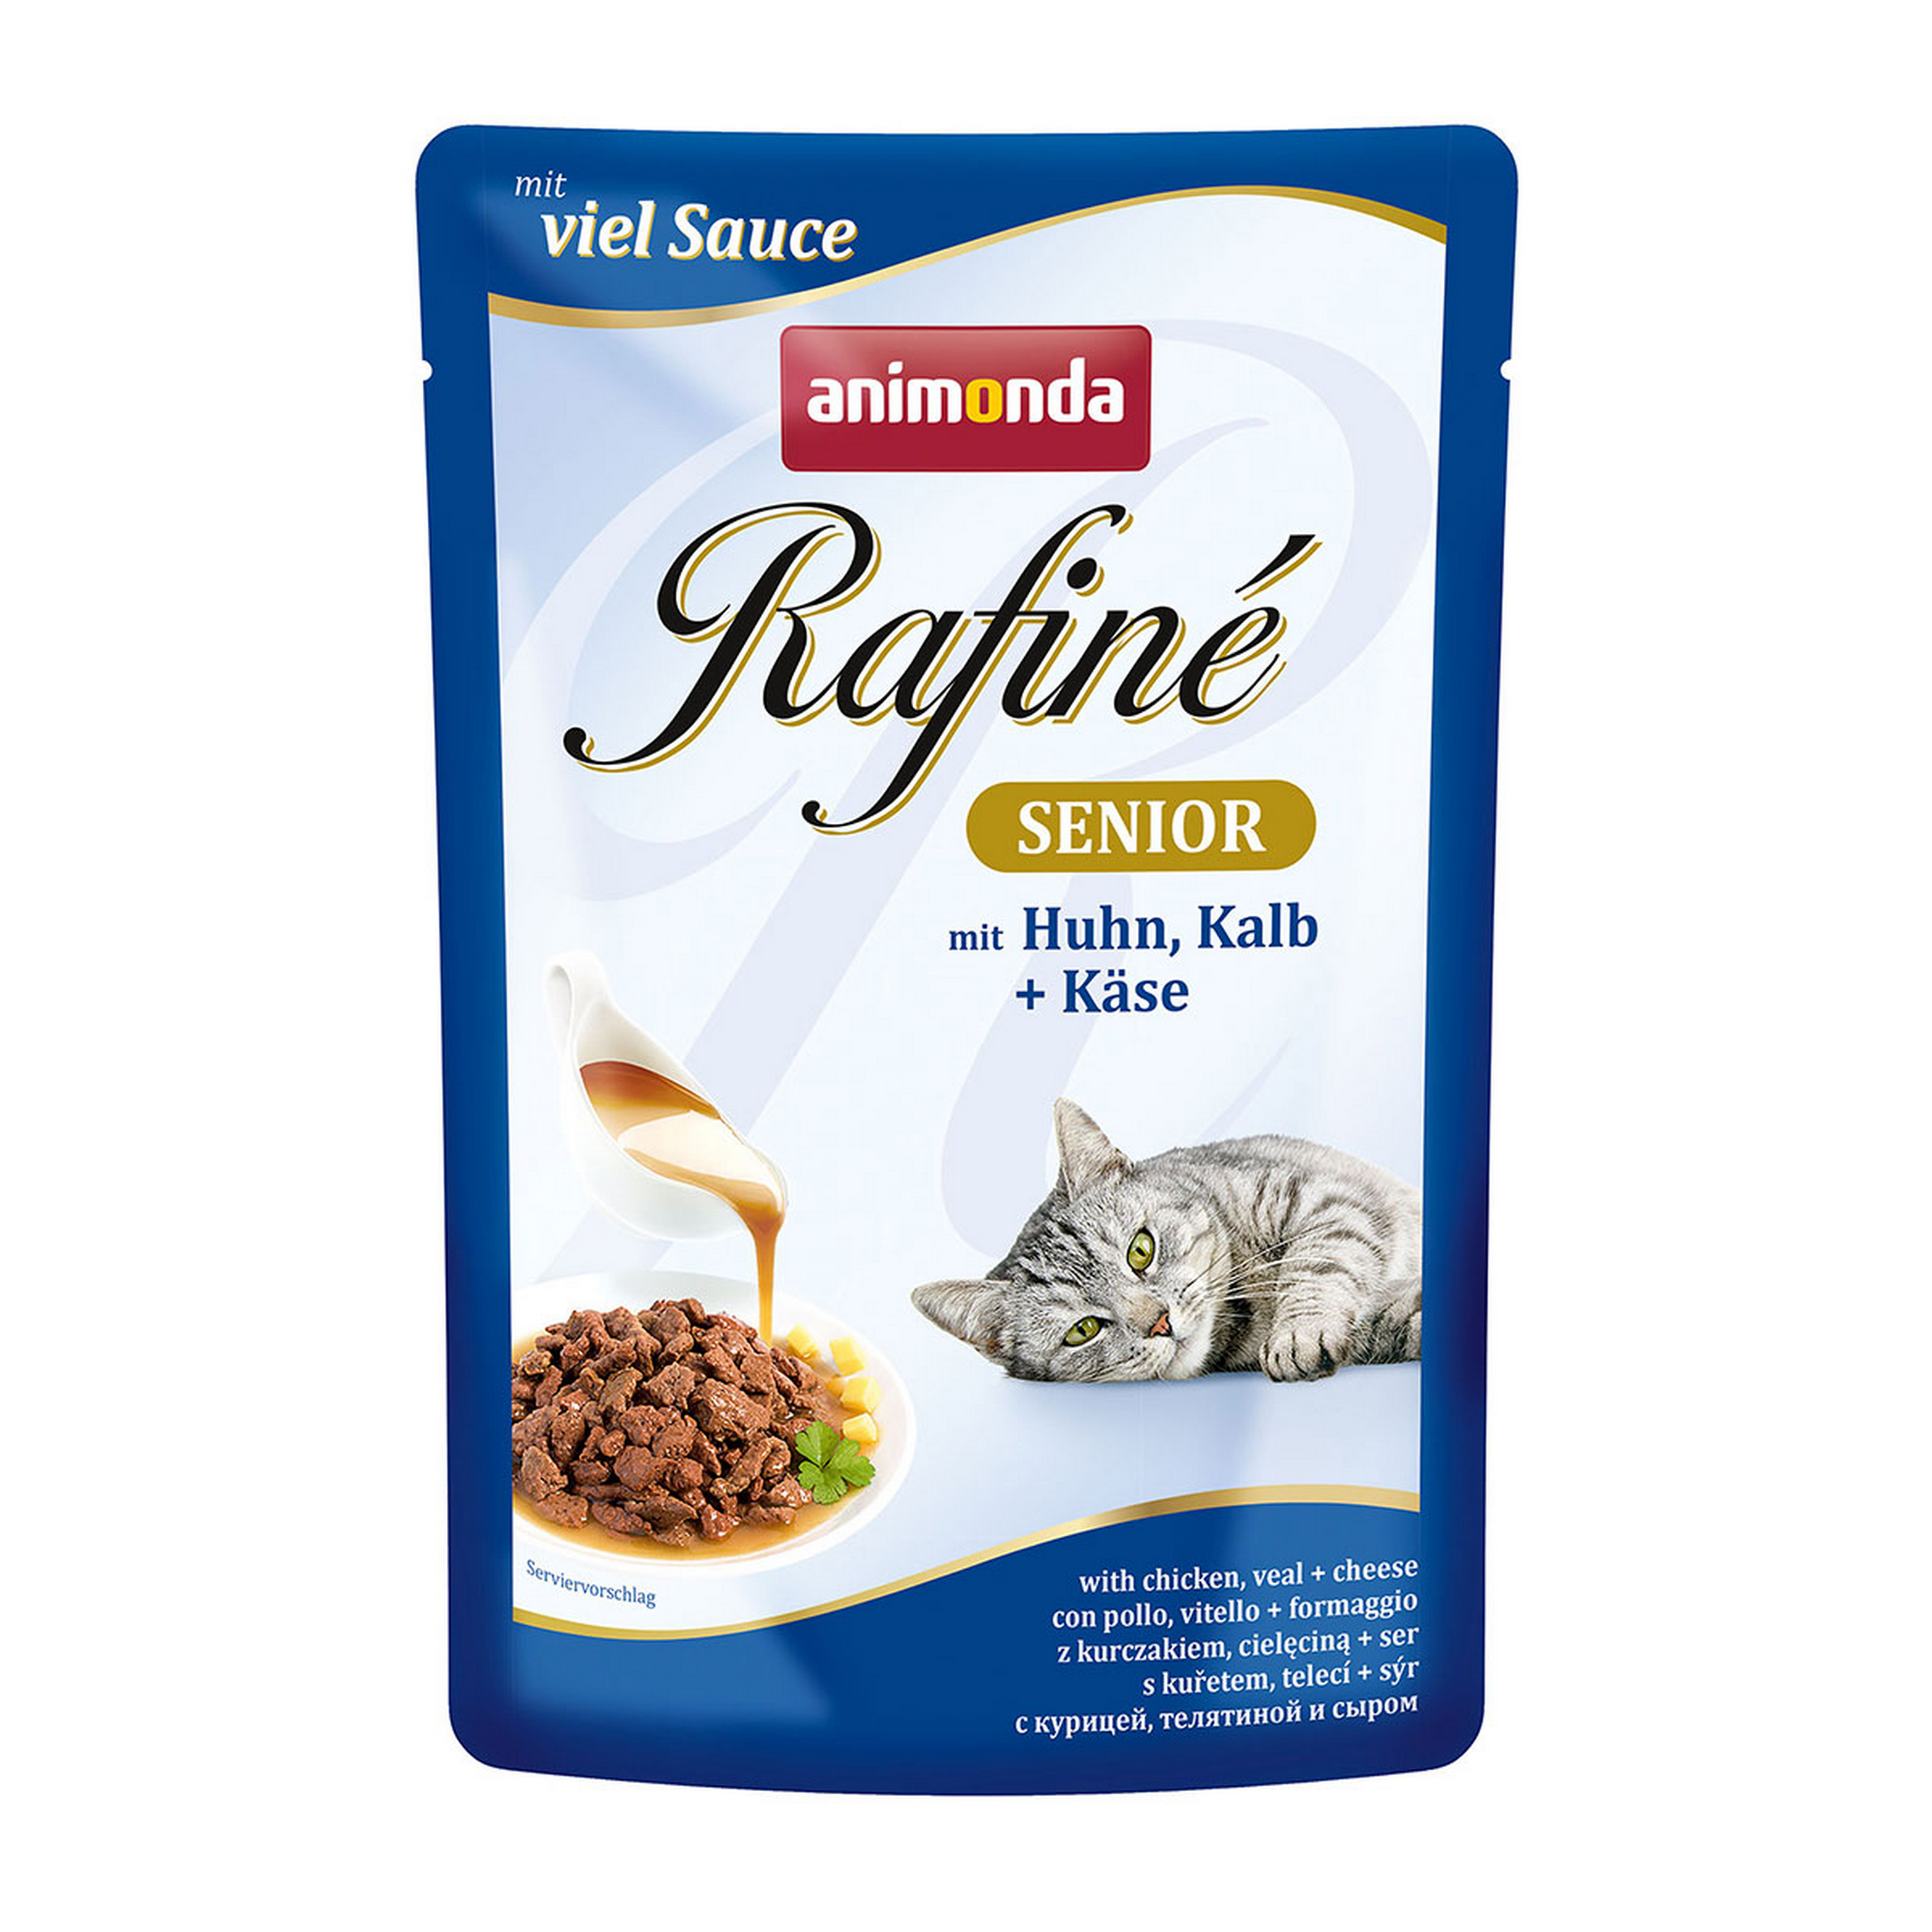 Katzennassfutter 'Rafiné' Senior, mit Huhn, Kalb und Käse, 100 g + product picture